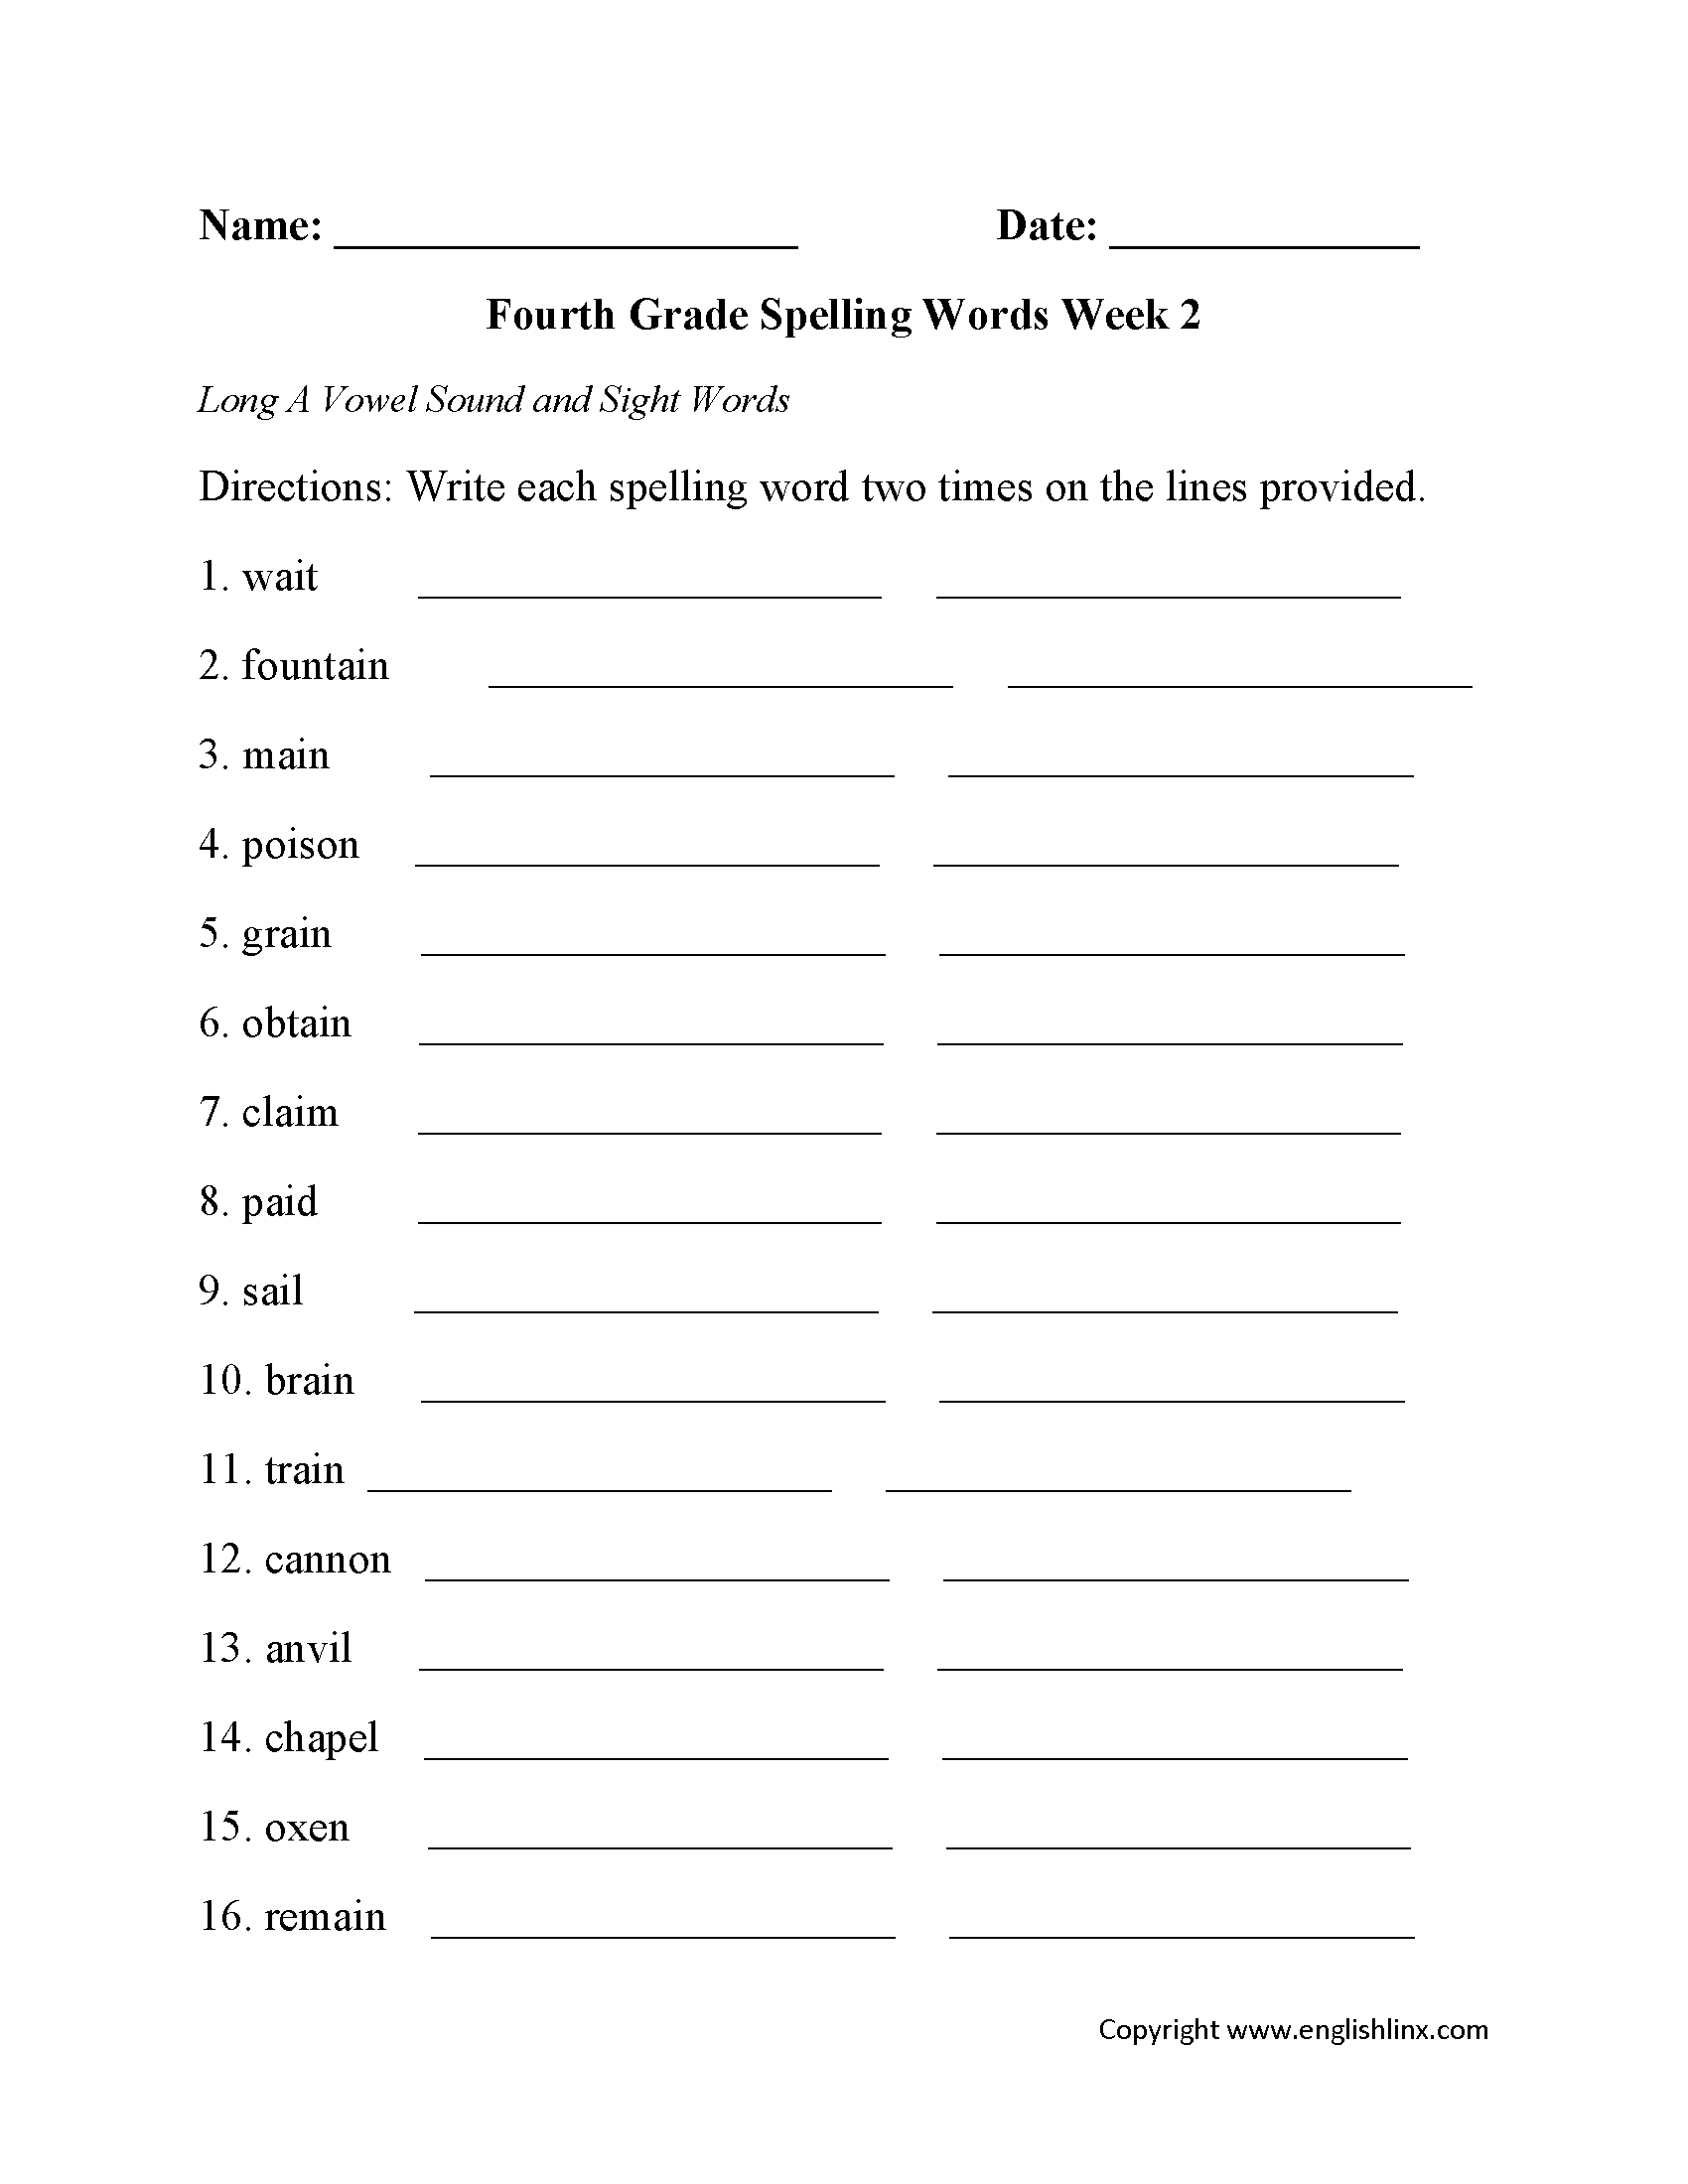 Spelling Worksheets | Fourth Grade Spelling Worksheets - Free Printable Spelling Worksheets For 5Th Grade